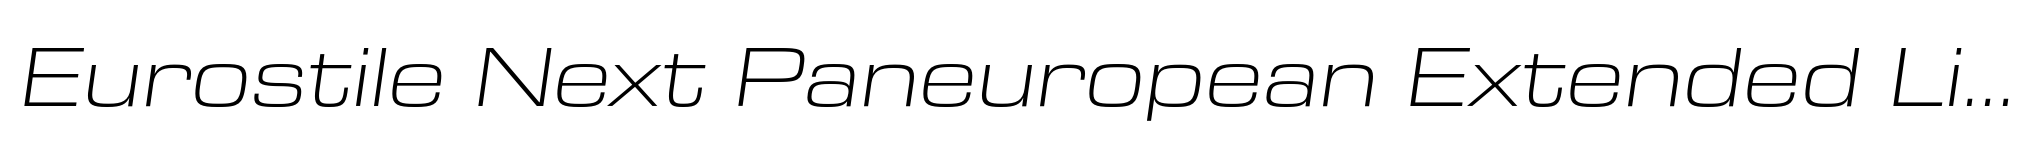 Eurostile Next Paneuropean Extended Light Italic image